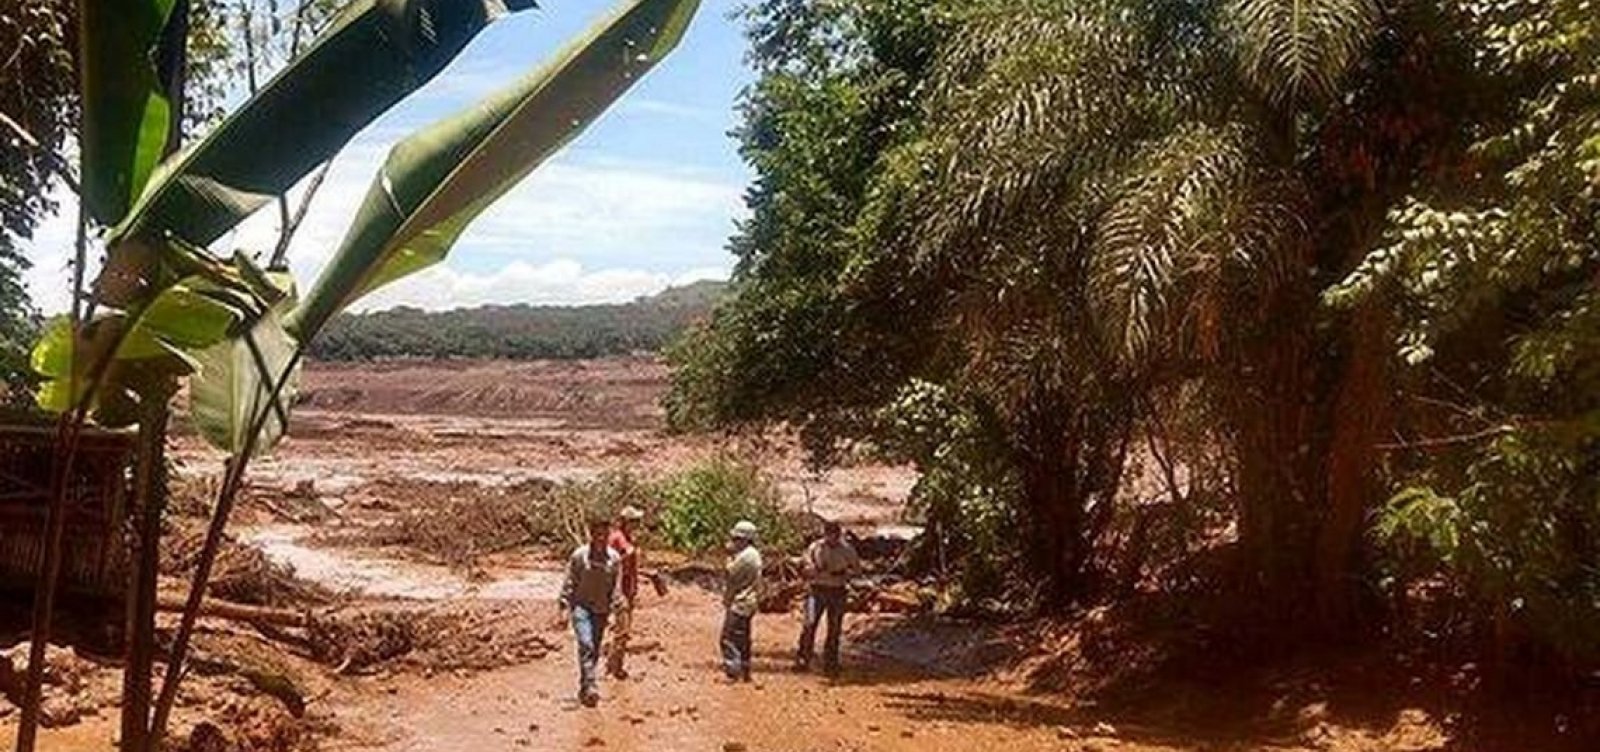 Vale é condenada pela primeira vez por rompimento de barragem em Brumadinho